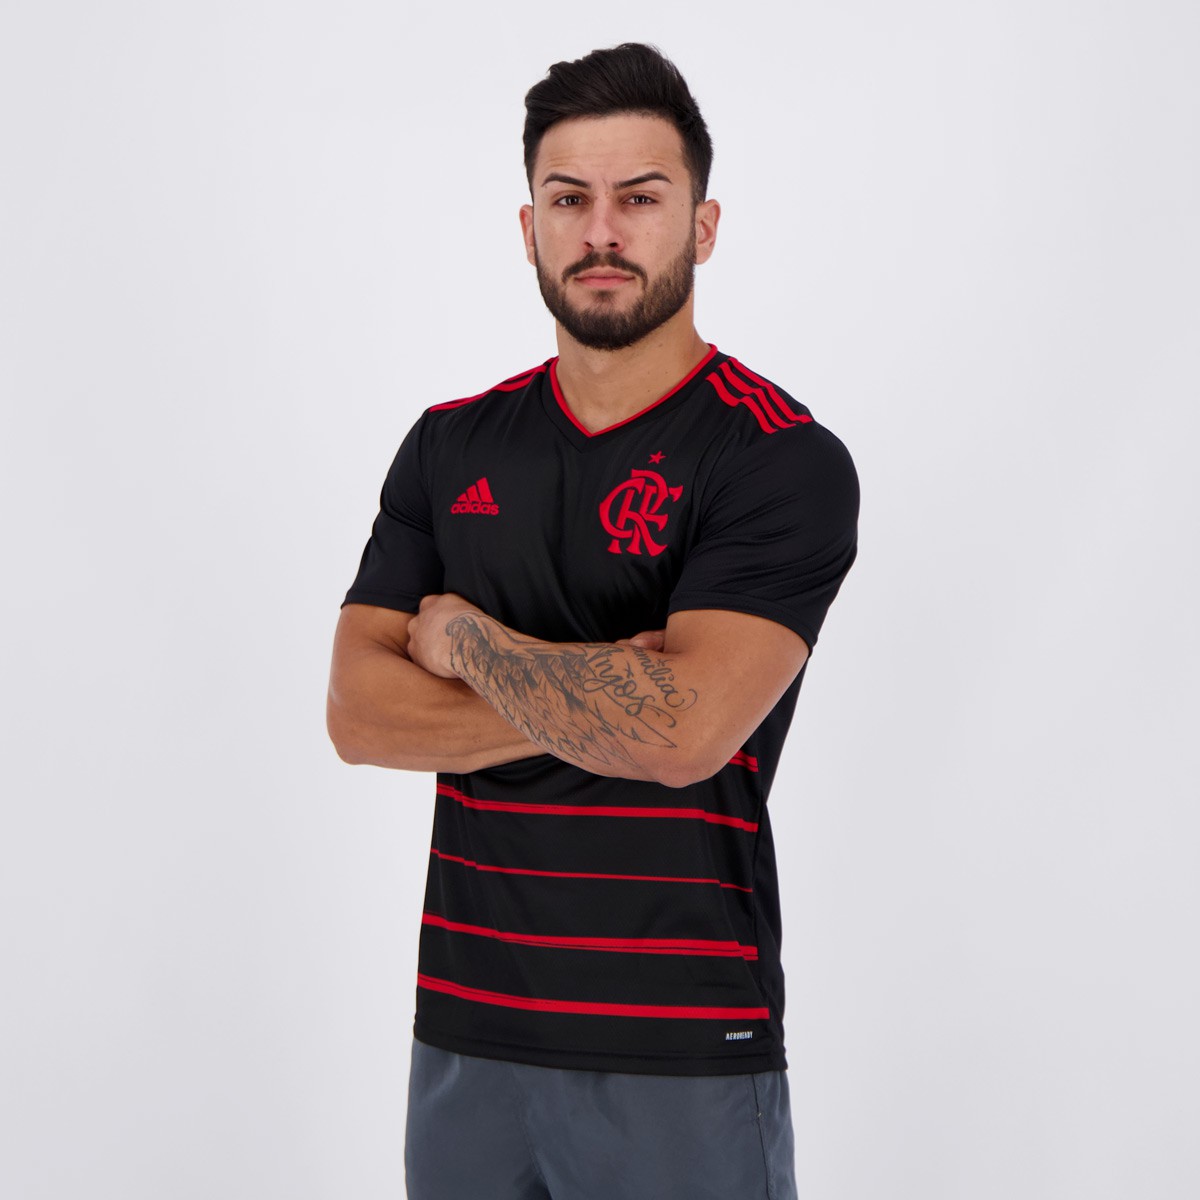 Vị trí 20 thuộc về áo thi đấu của Flamengo